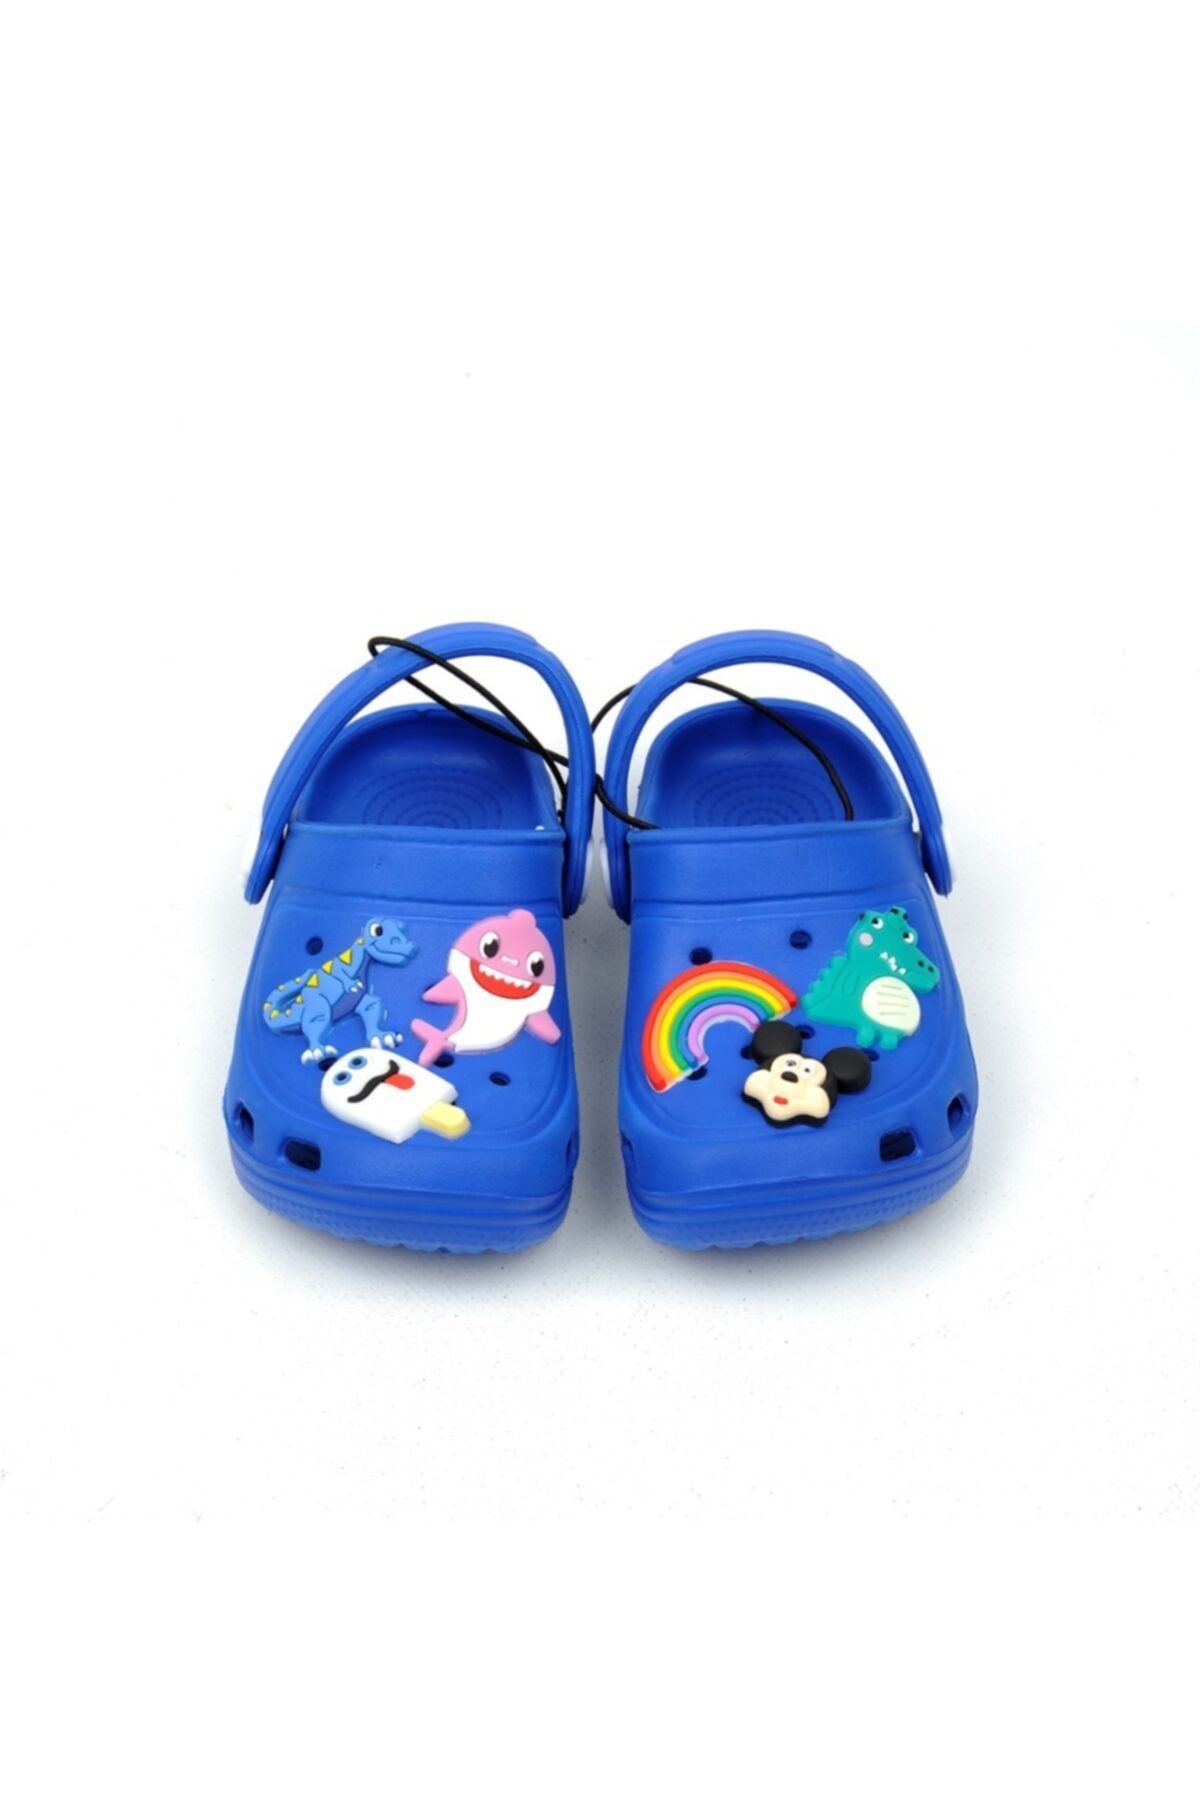 QUEEN AKSESUAR Crocs Tarz Model Sandalet Terlik Mickey Dinazor Süslü Erkek Çocuk Saks Mavi